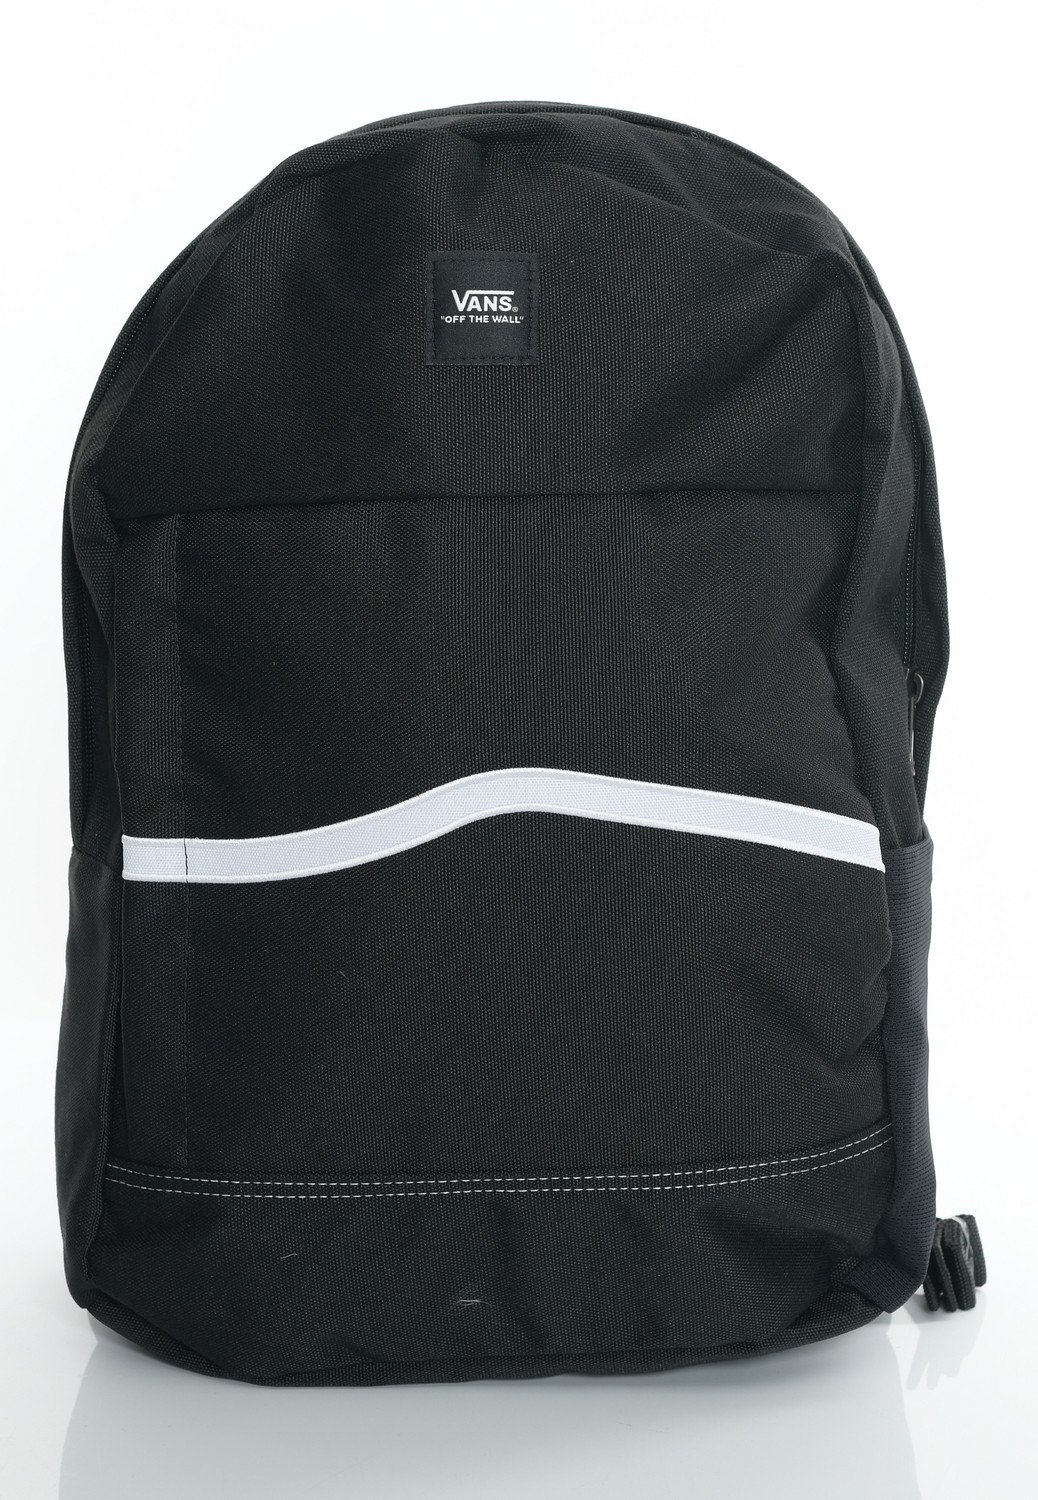 Vans - Construct Skool Black/White - Backpacks